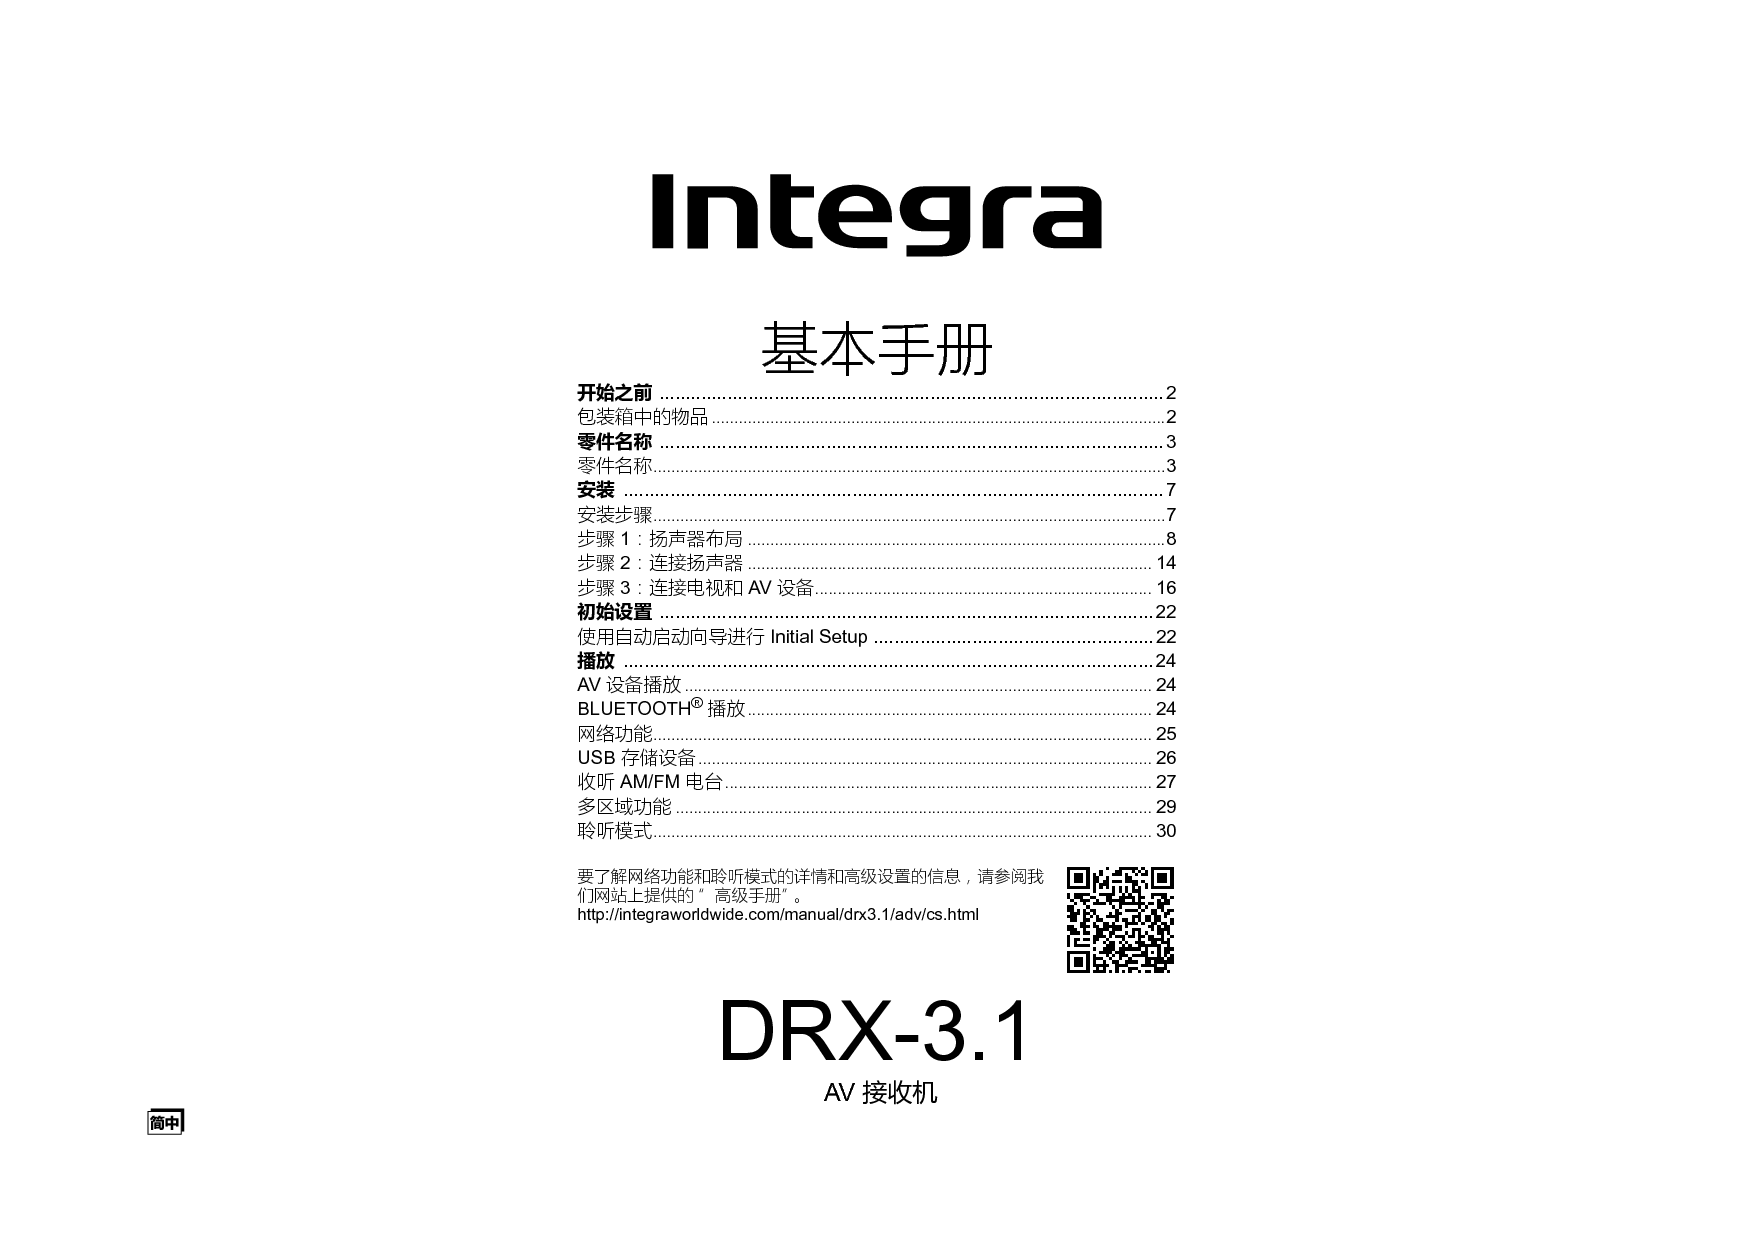 英桥 Integra DRX-3.1 用户手册 封面